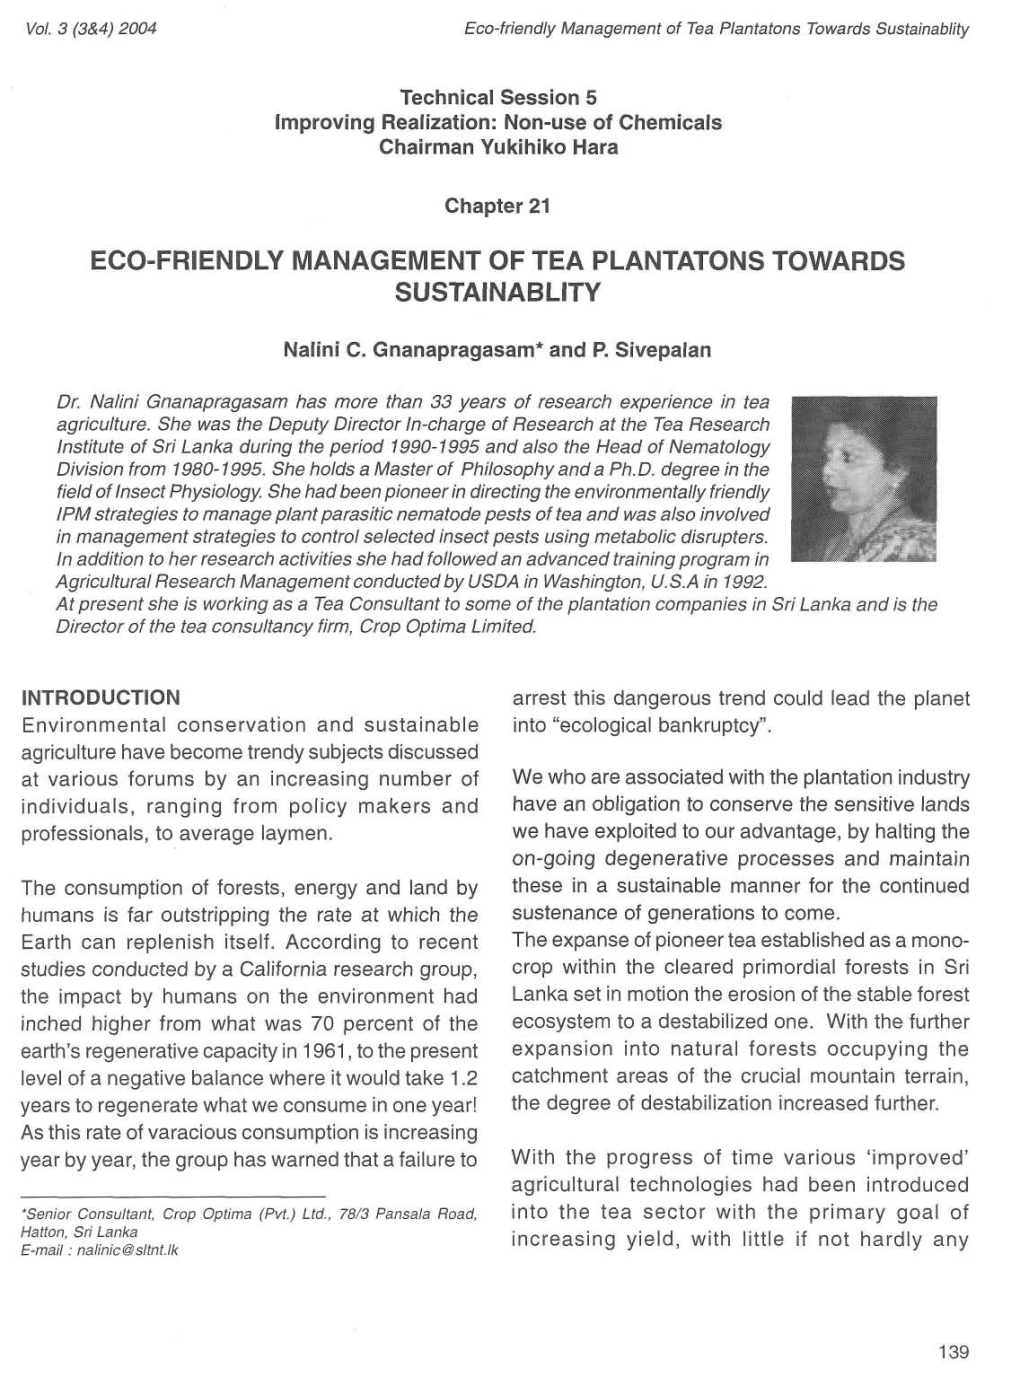 Eco-Friendly Management of Tea Plantatons Towards Sustainablity